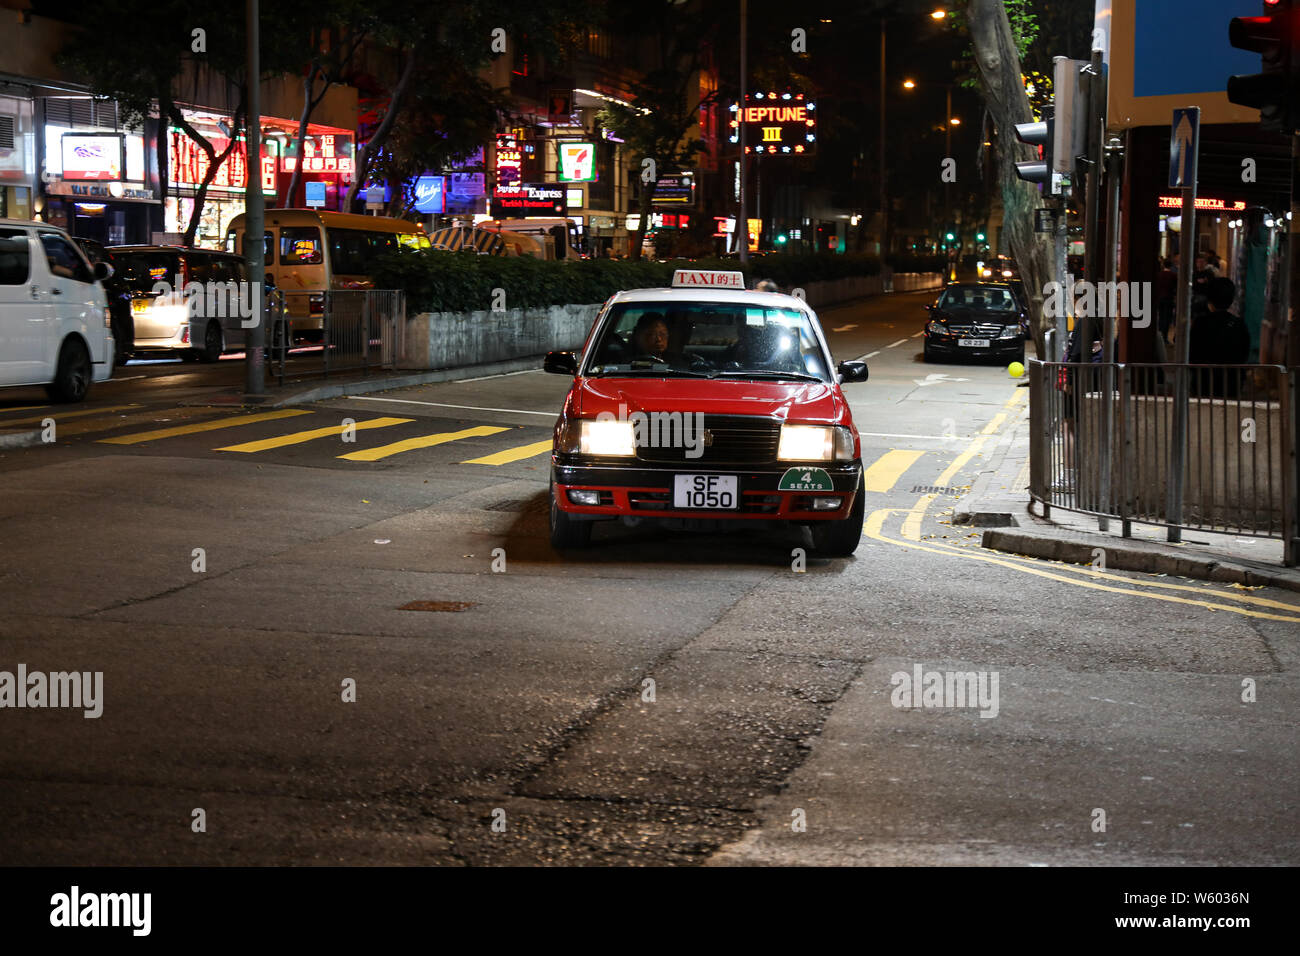 Imagen nocturna escénica de taxi urbano iluminado de color rojo en la esquina de la calle en Wan Chai, Hong Kong Foto de stock